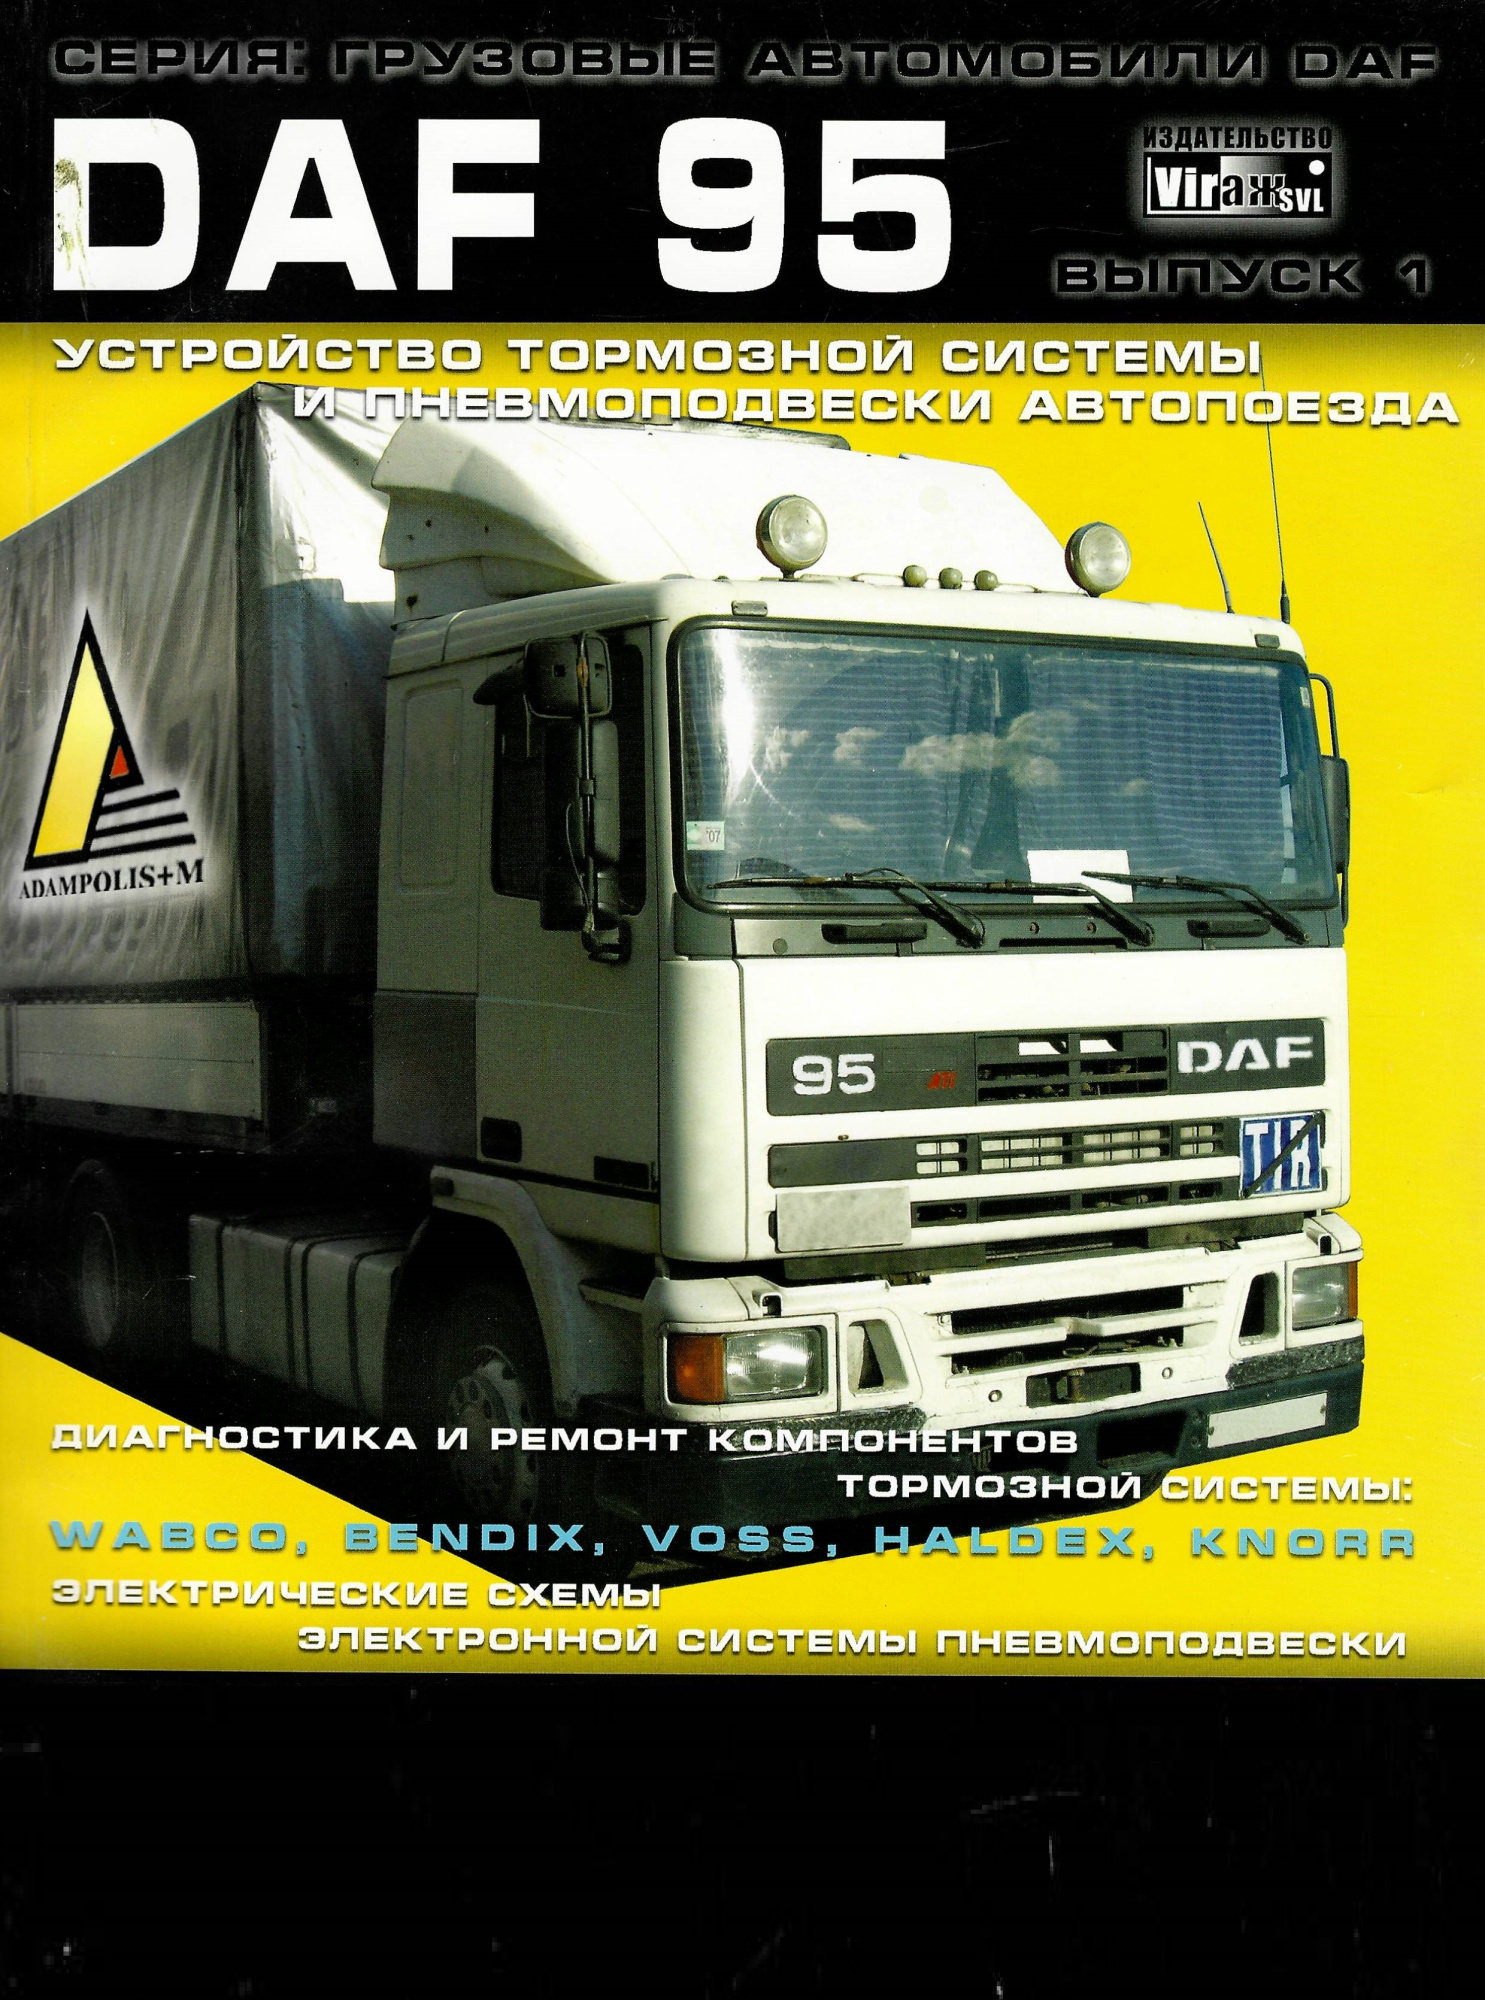 Daf 95 Книга устройство тормозной системы и превмоподвески автопоезда. Вираж-SVL